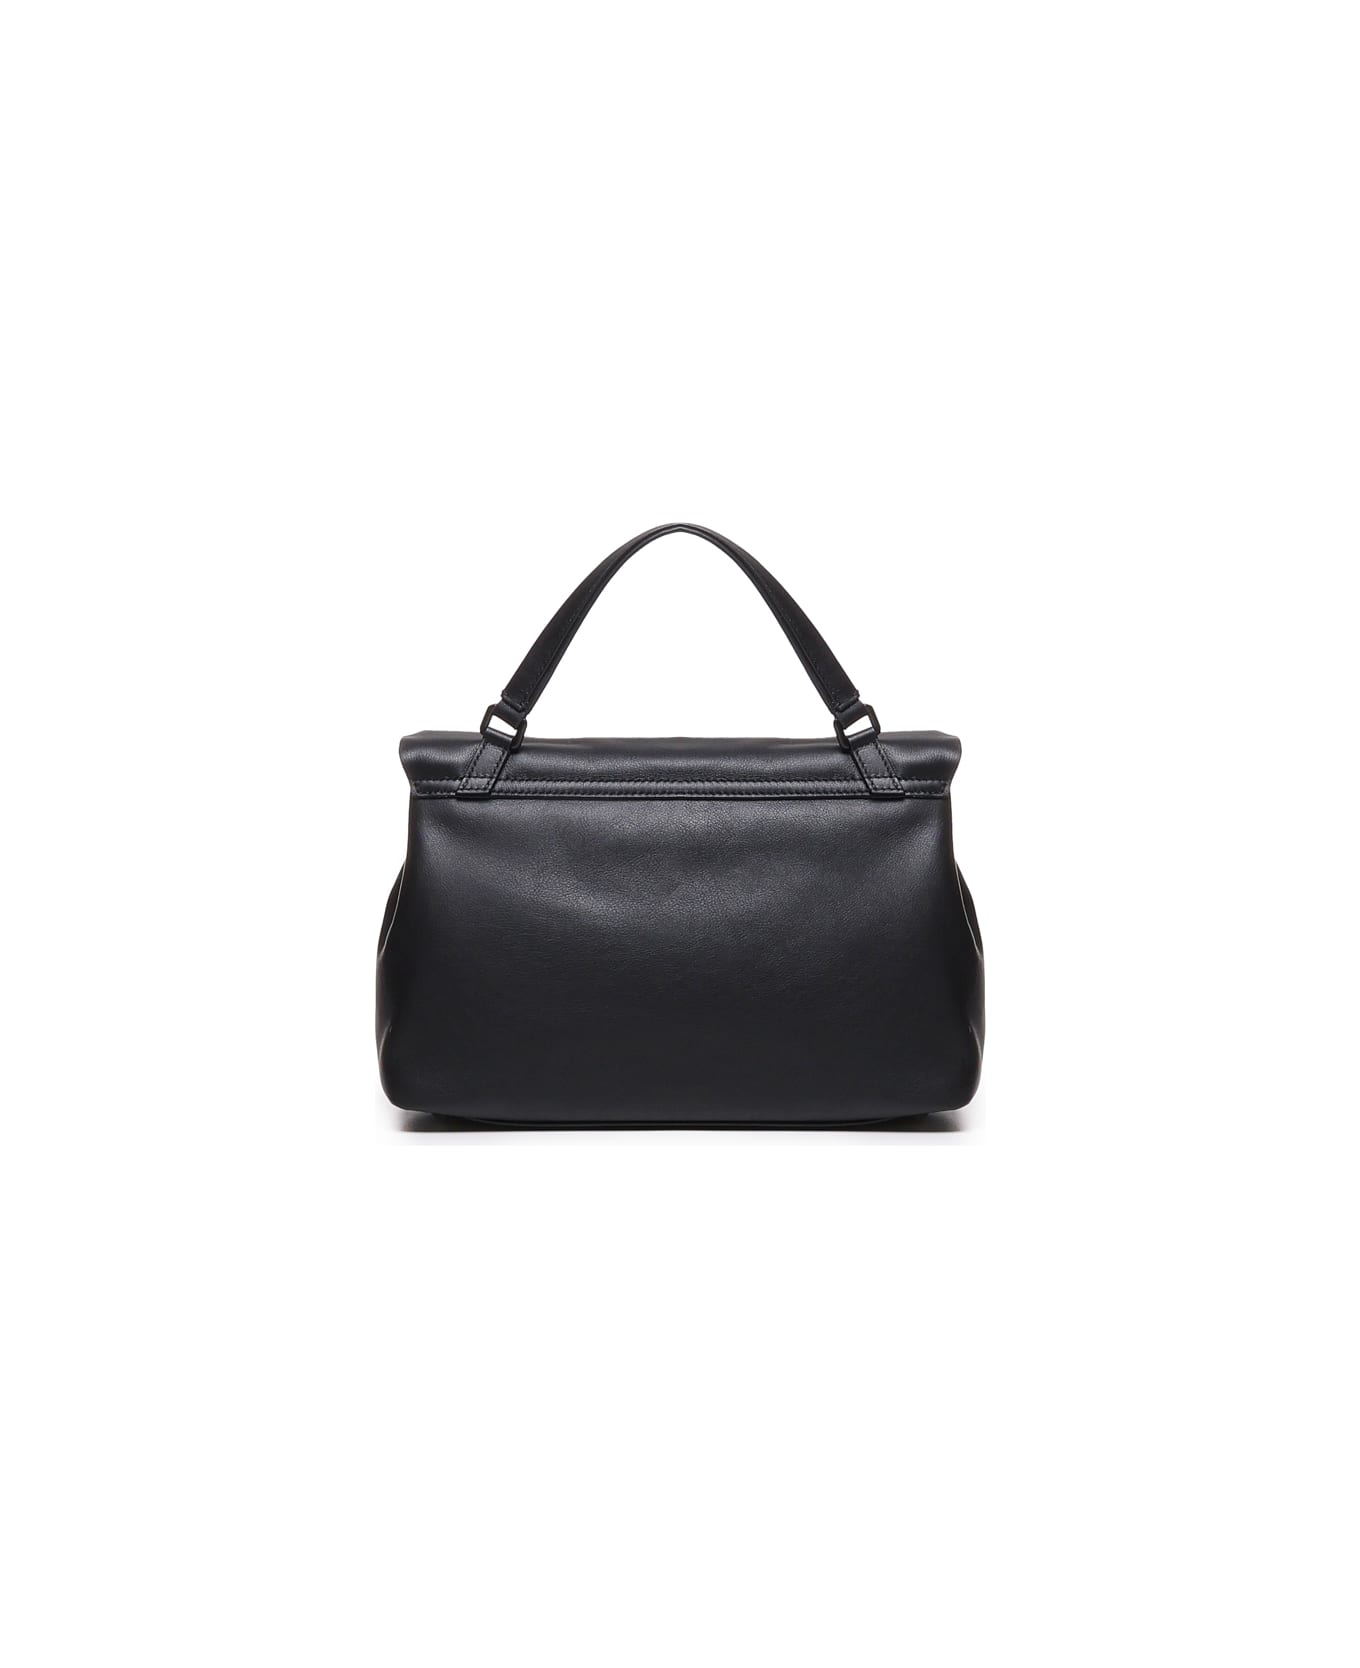 Zanellato Postina Piuma Pillow Bag In Leather - Black